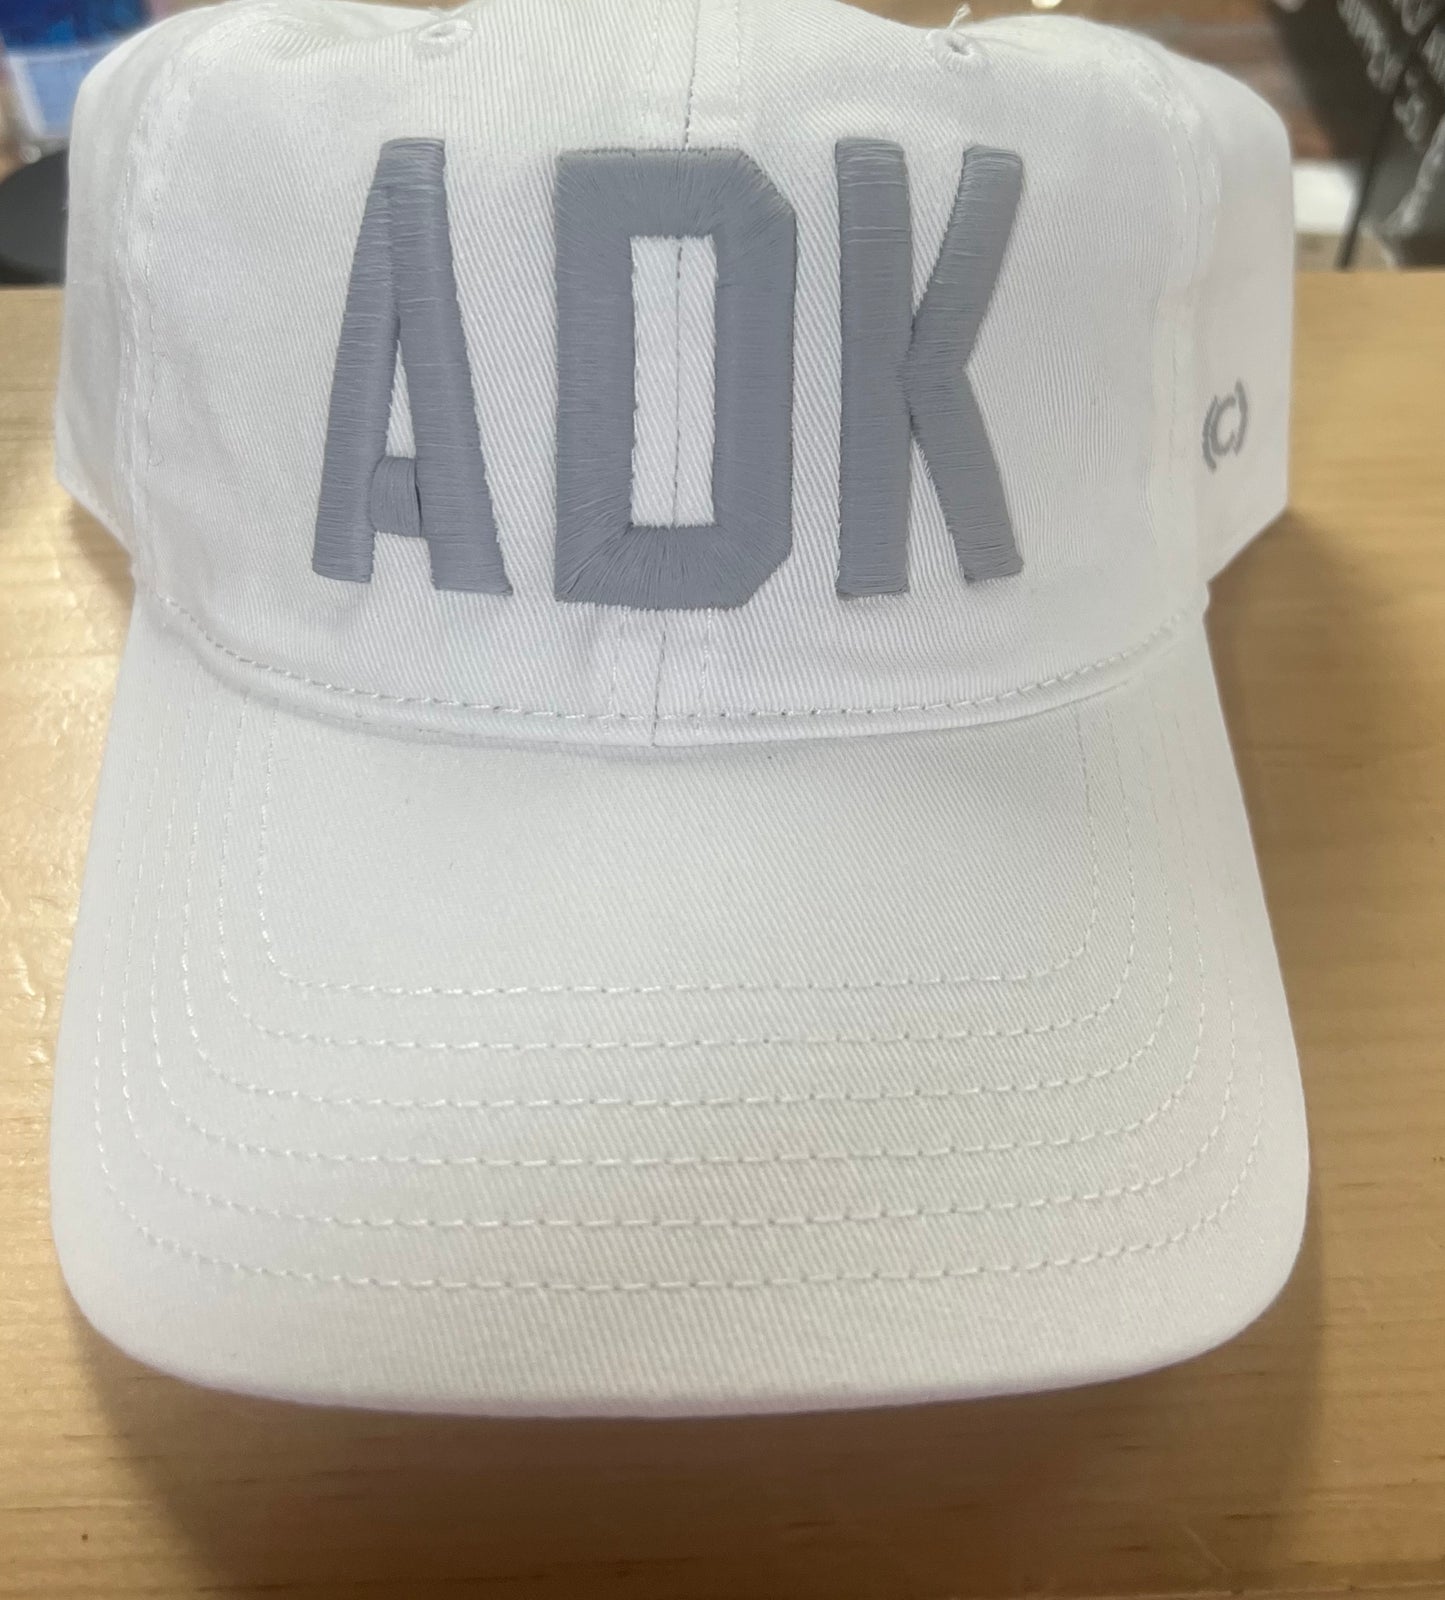 "ADK" Dad Hat